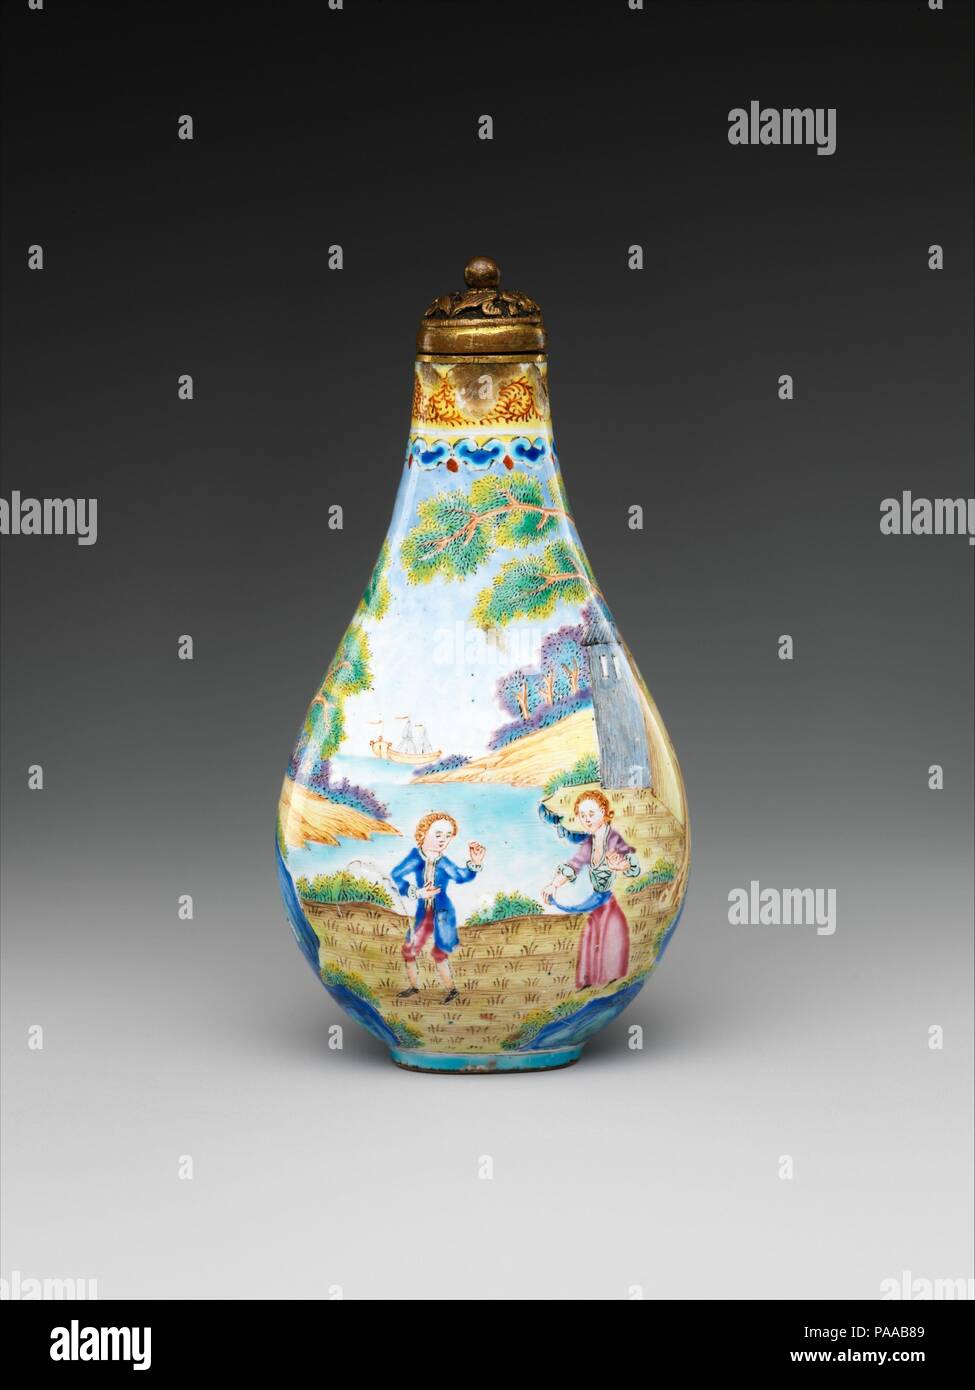 Bouteille à priser avec les chiffres européens. Culture : la Chine. Dimensions : H. 2 7/8 in. (7,3 cm) ; W. 1 1/2 in. (3,8 cm) ; D. 1. (2,5 cm). Ce snuff bottles illustre les contacts fréquents entre la Chine et l'Ouest durant la dynastie des Qing (1644-1911), lorsqu'il n'est pas seulement la technique, l'émail peint, mais aussi les motifs décoratifs, les chiffres de l'Ouest dans le parc, ont été introduits à partir de l'Europe. Musée : Metropolitan Museum of Art, New York, USA. Banque D'Images